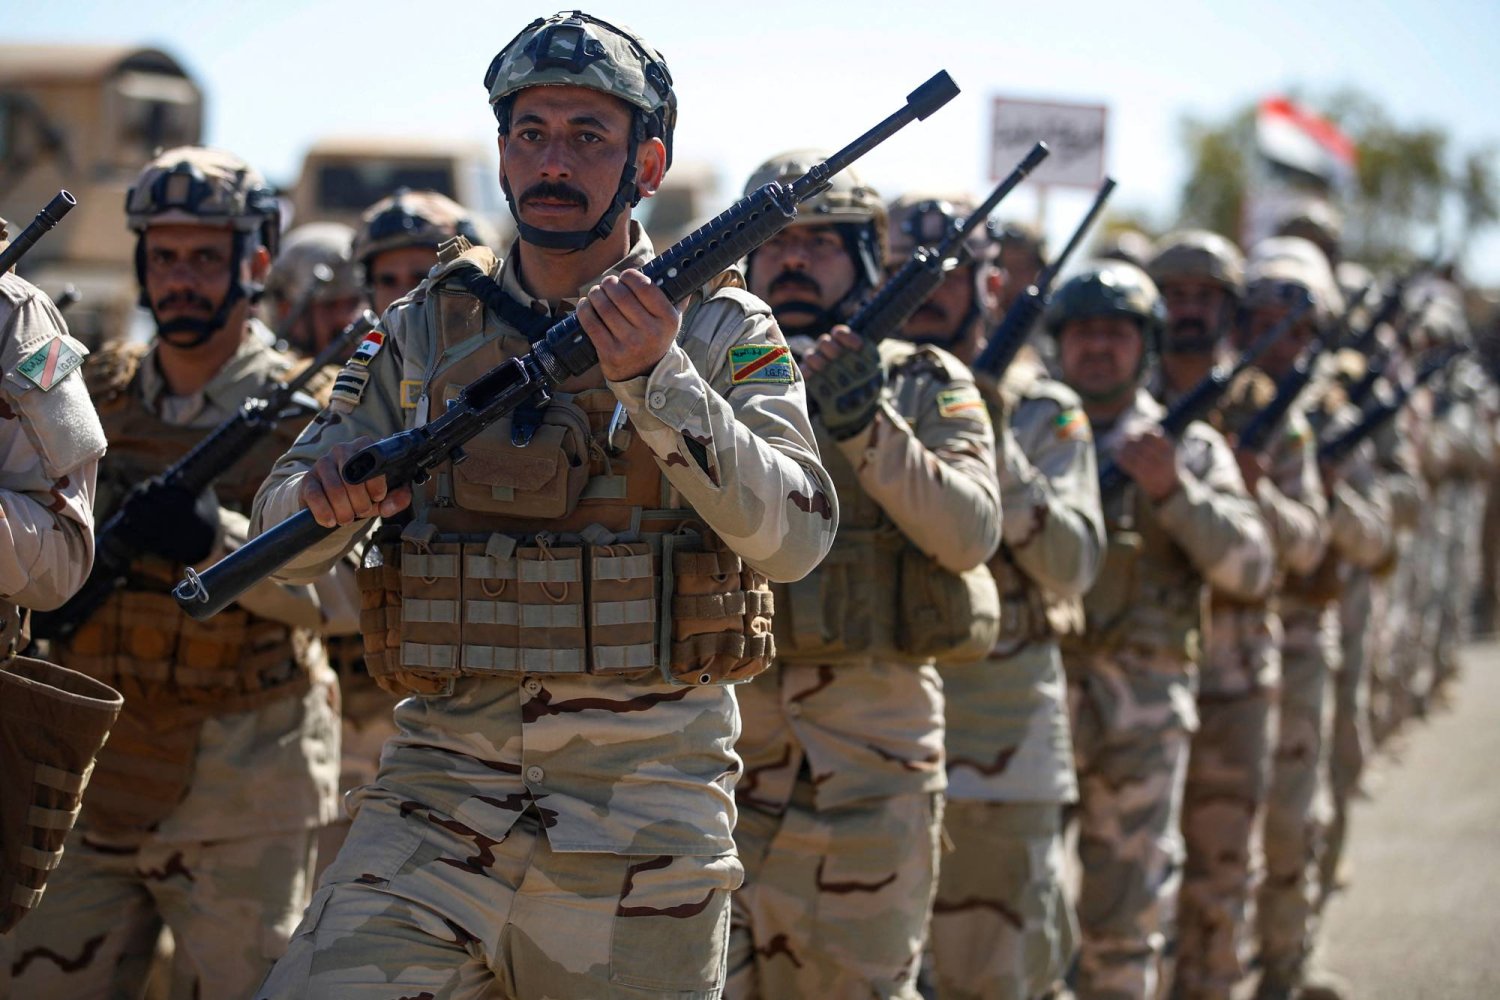 جنود عراقيون خلال احتفال بتخرجهم من قاعدة عين الأسد في الأنبار غرب العراق يوم 29 فبراير الماضي (أ.ف.ب)